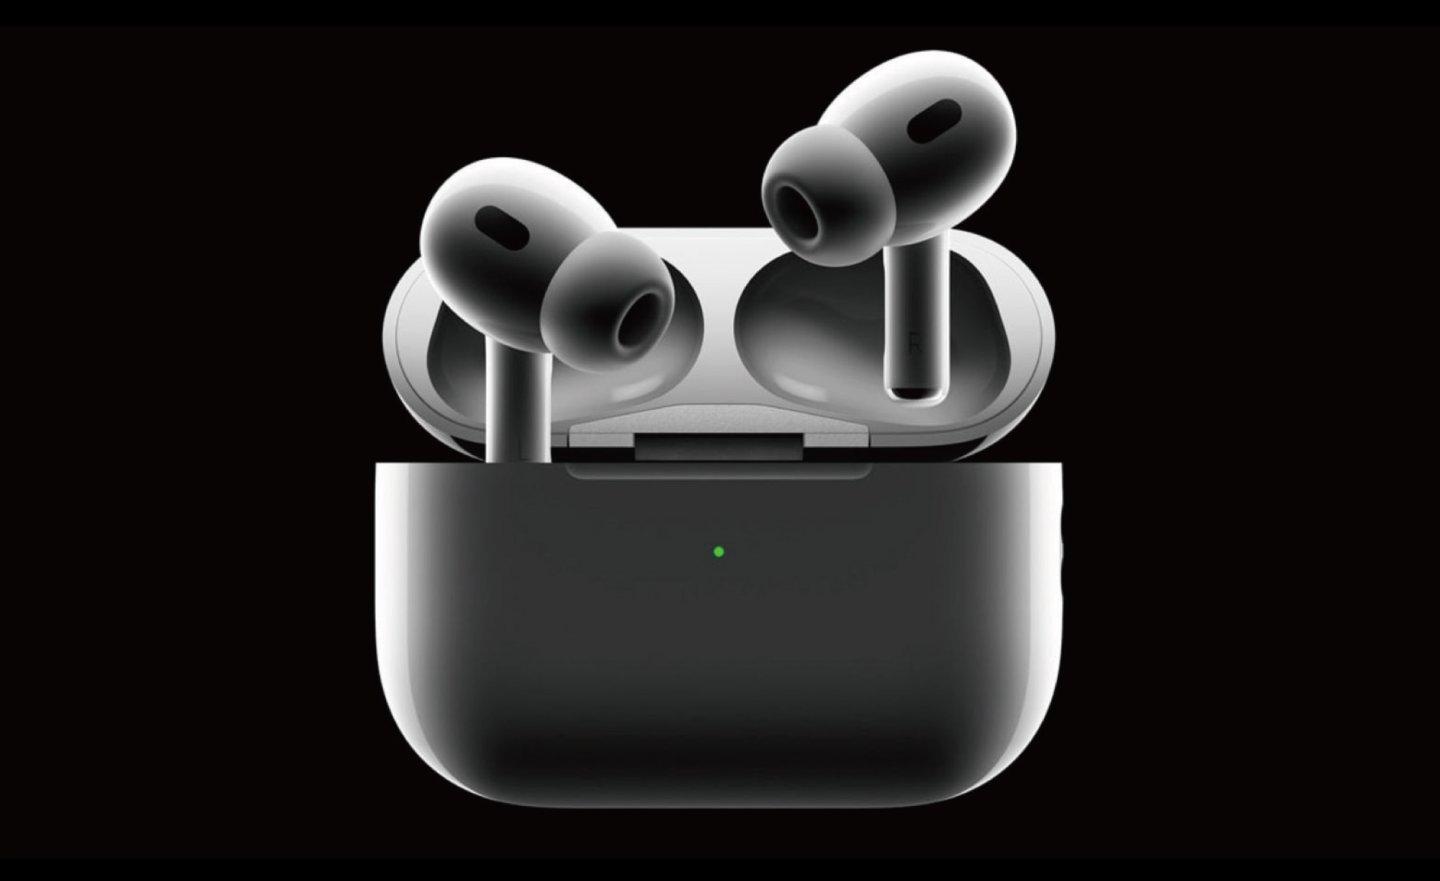 蘋果要求供應商將 AirPods 和 Beats 耳機轉移到印度量產